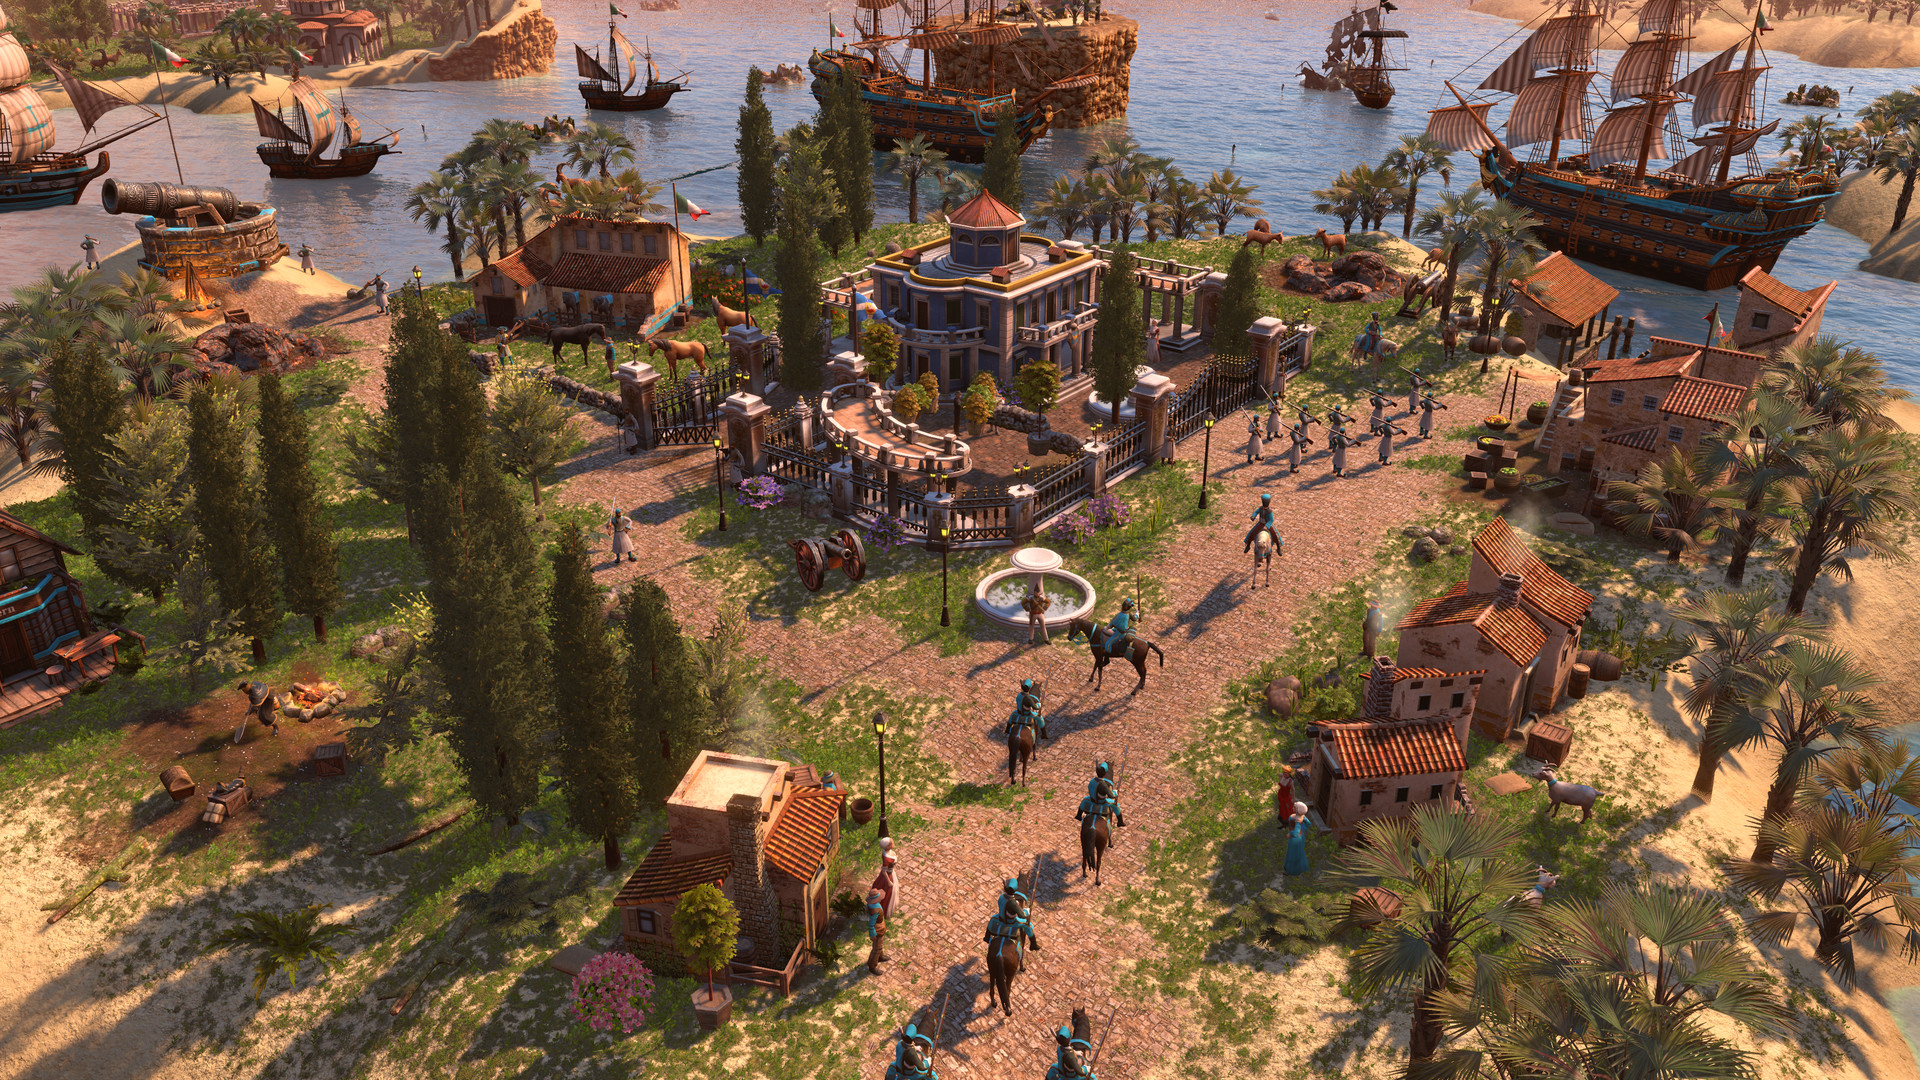 《帝国时代3：决定版》DLC“地中海骑士团”正式发售 定价39元